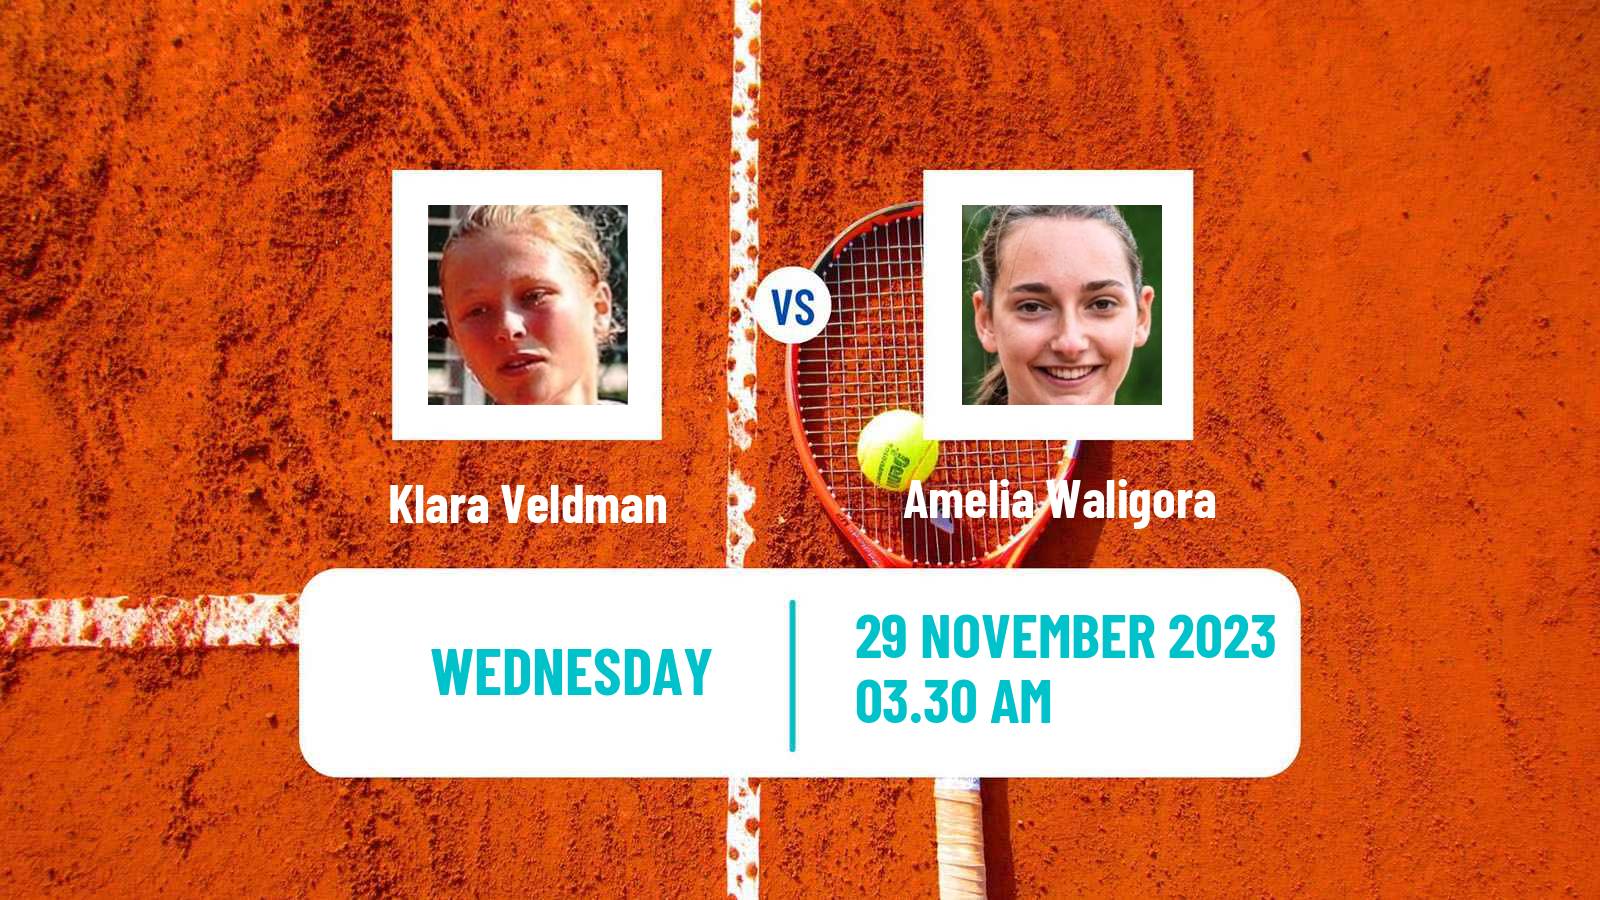 Tennis ITF W15 Monastir 42 Women Klara Veldman - Amelia Waligora